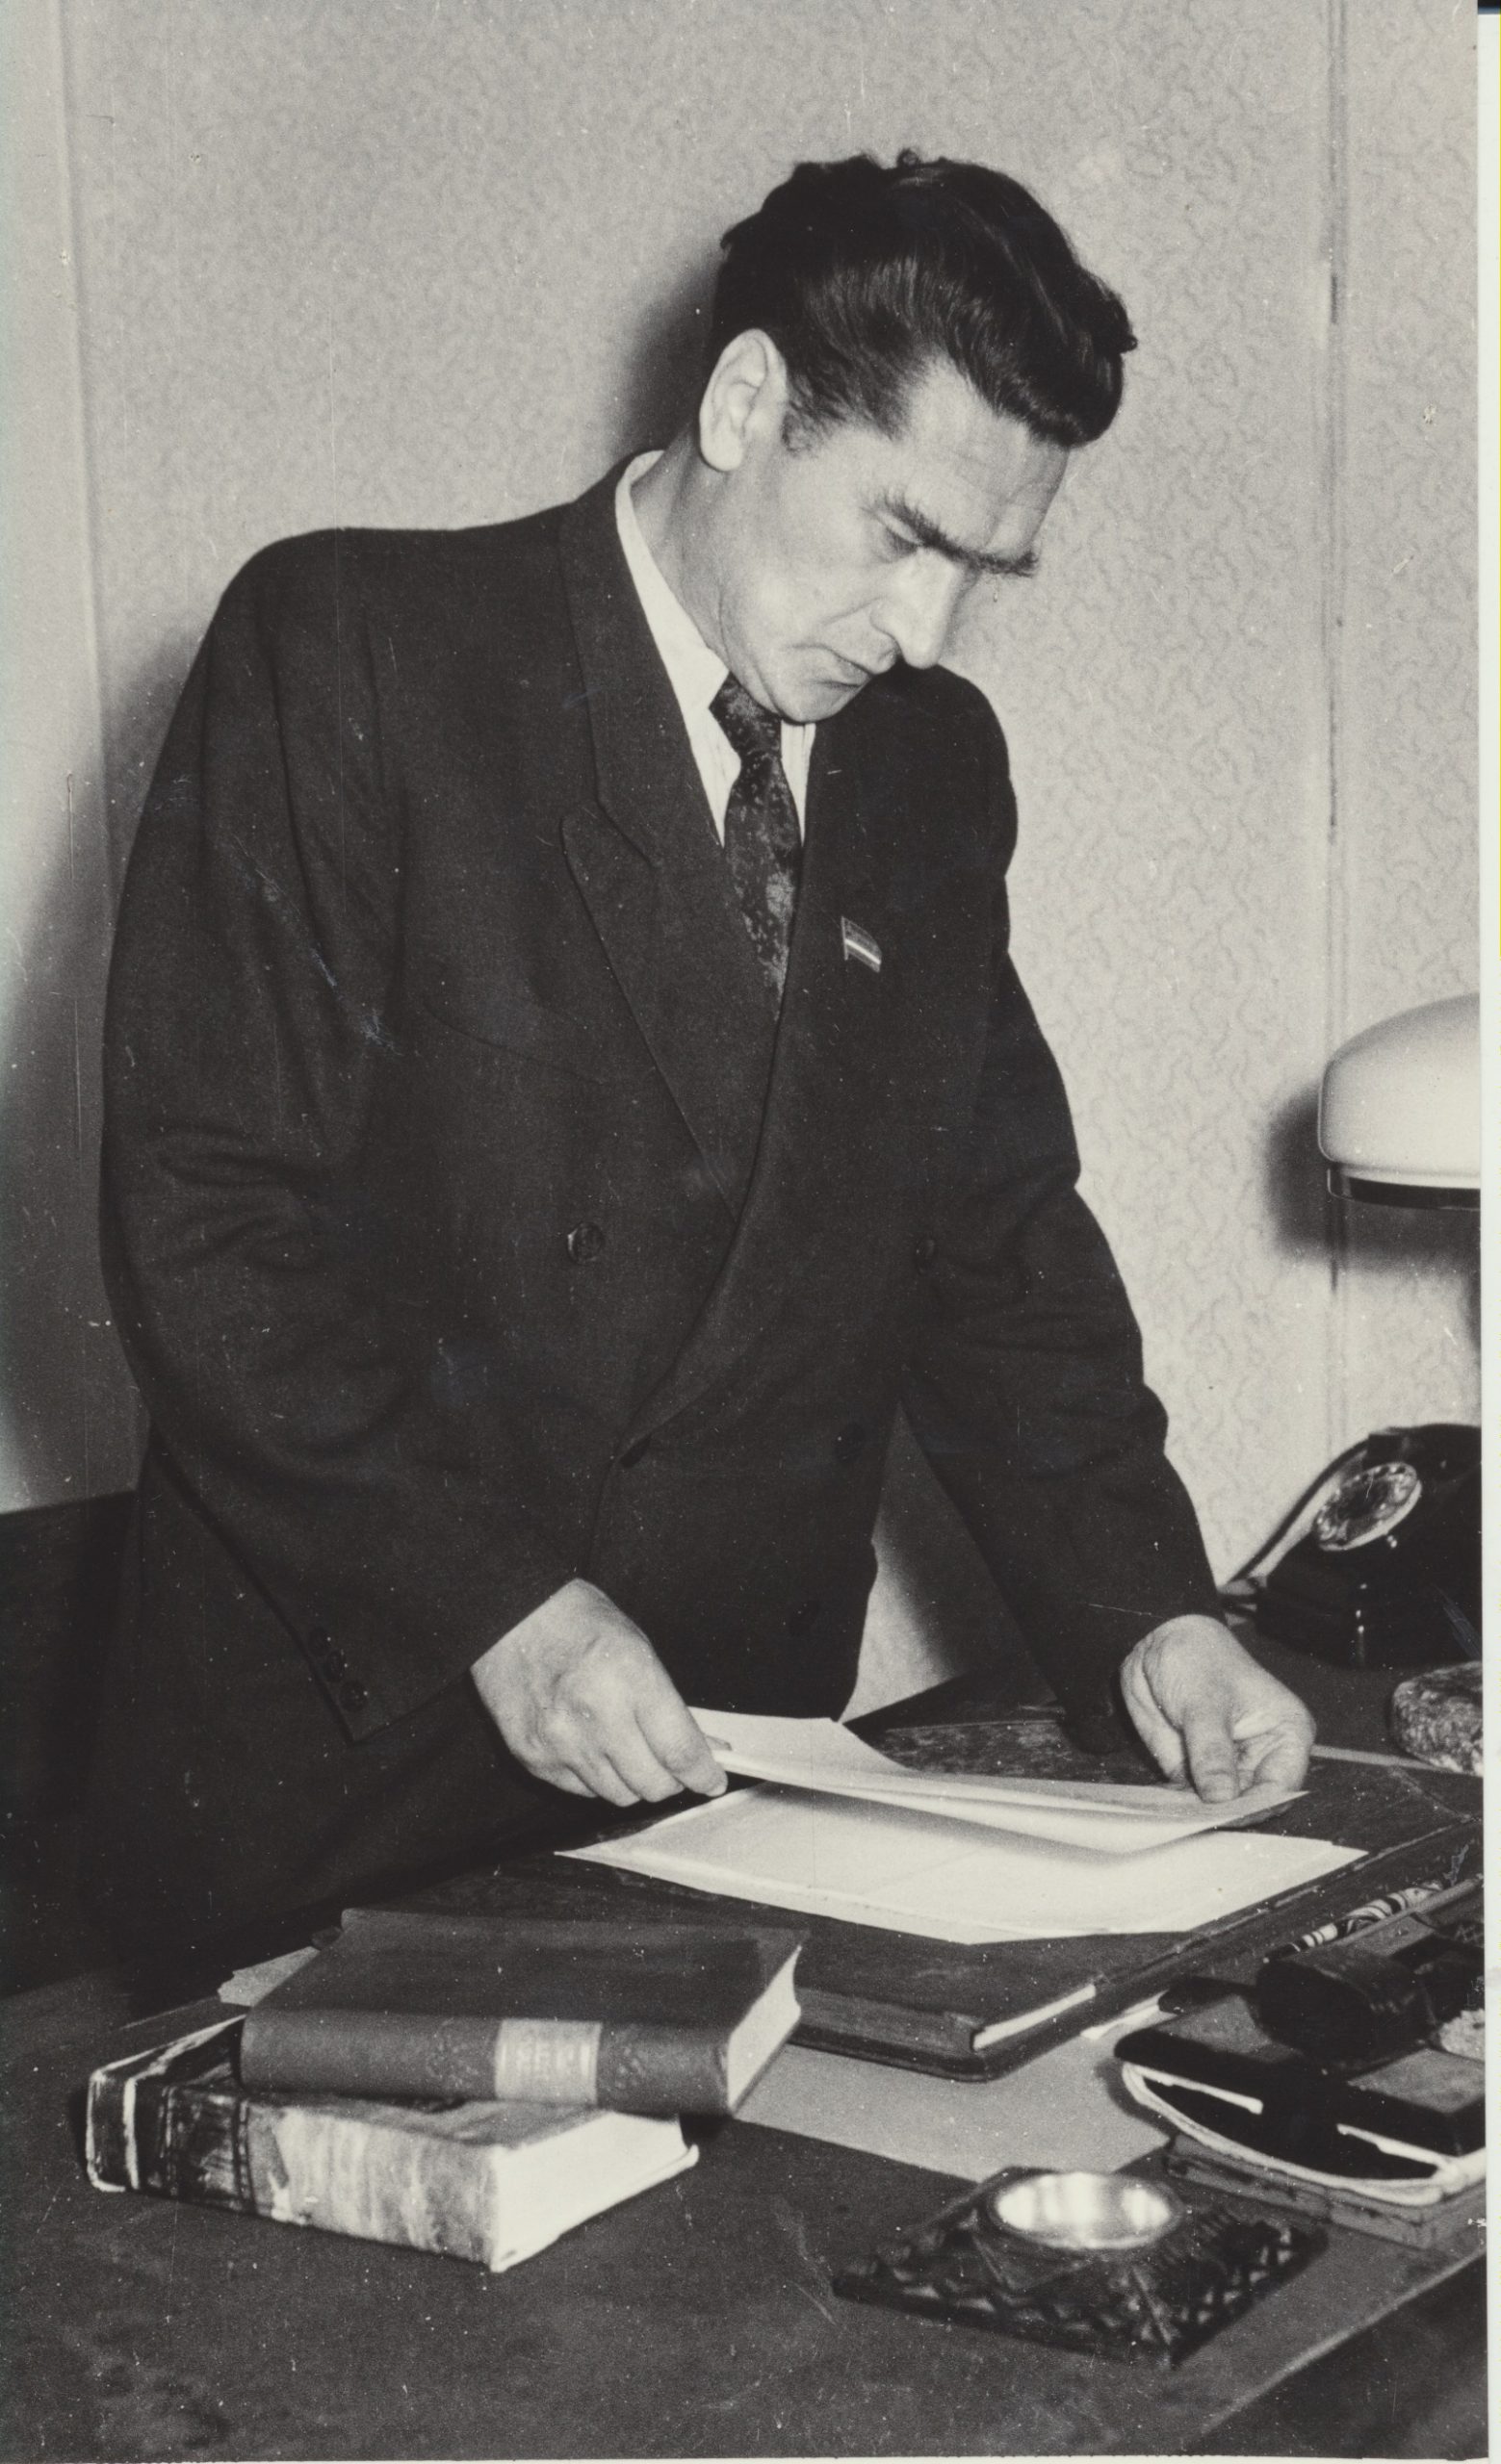 Daugybė kūrinių, straipsnių, recenzijų perėjo per redaktoriaus J. Šimkaus rankas. Vilnius, 1956 m. J. Grikienio nuotrauka